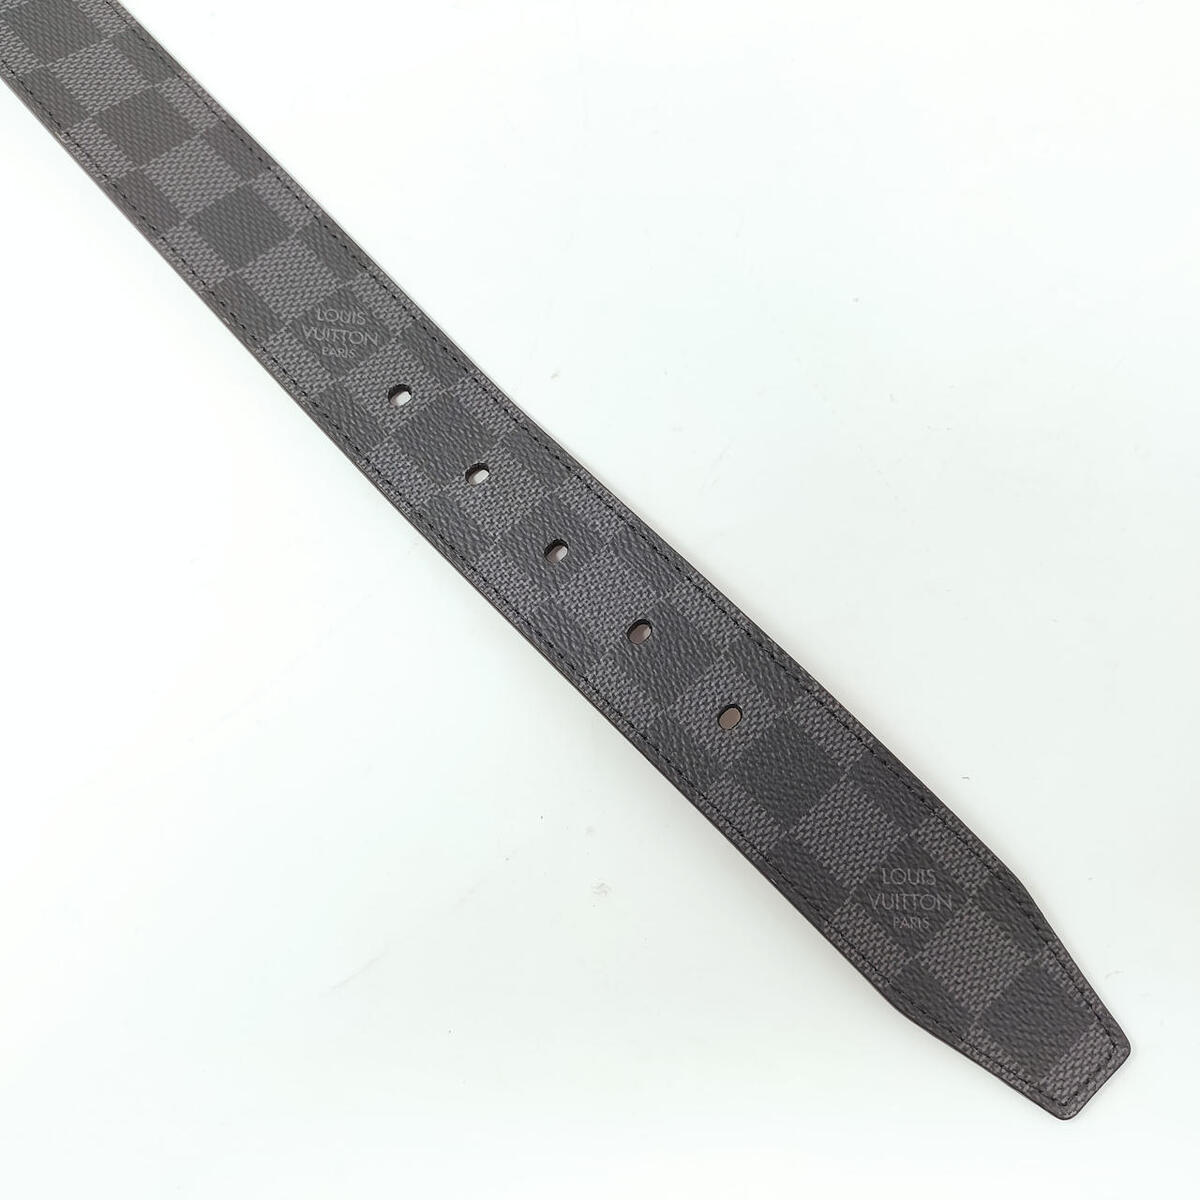 Authentic Louis Vuitton Architect 35MM Belt 85 / 34 Black Damier M0485 Boxed